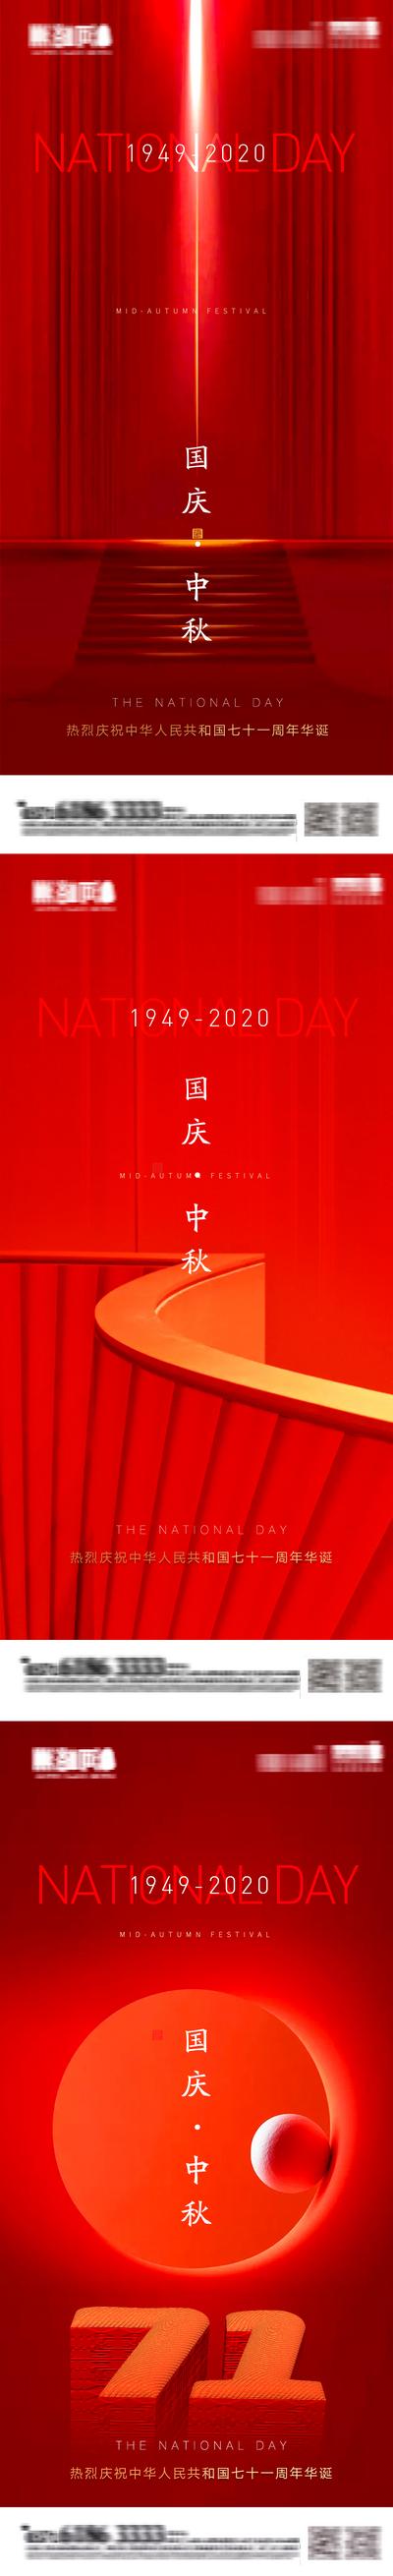 南门网 海报 中国传统节日 公历节日 中秋节 国庆 红色 高端 系列